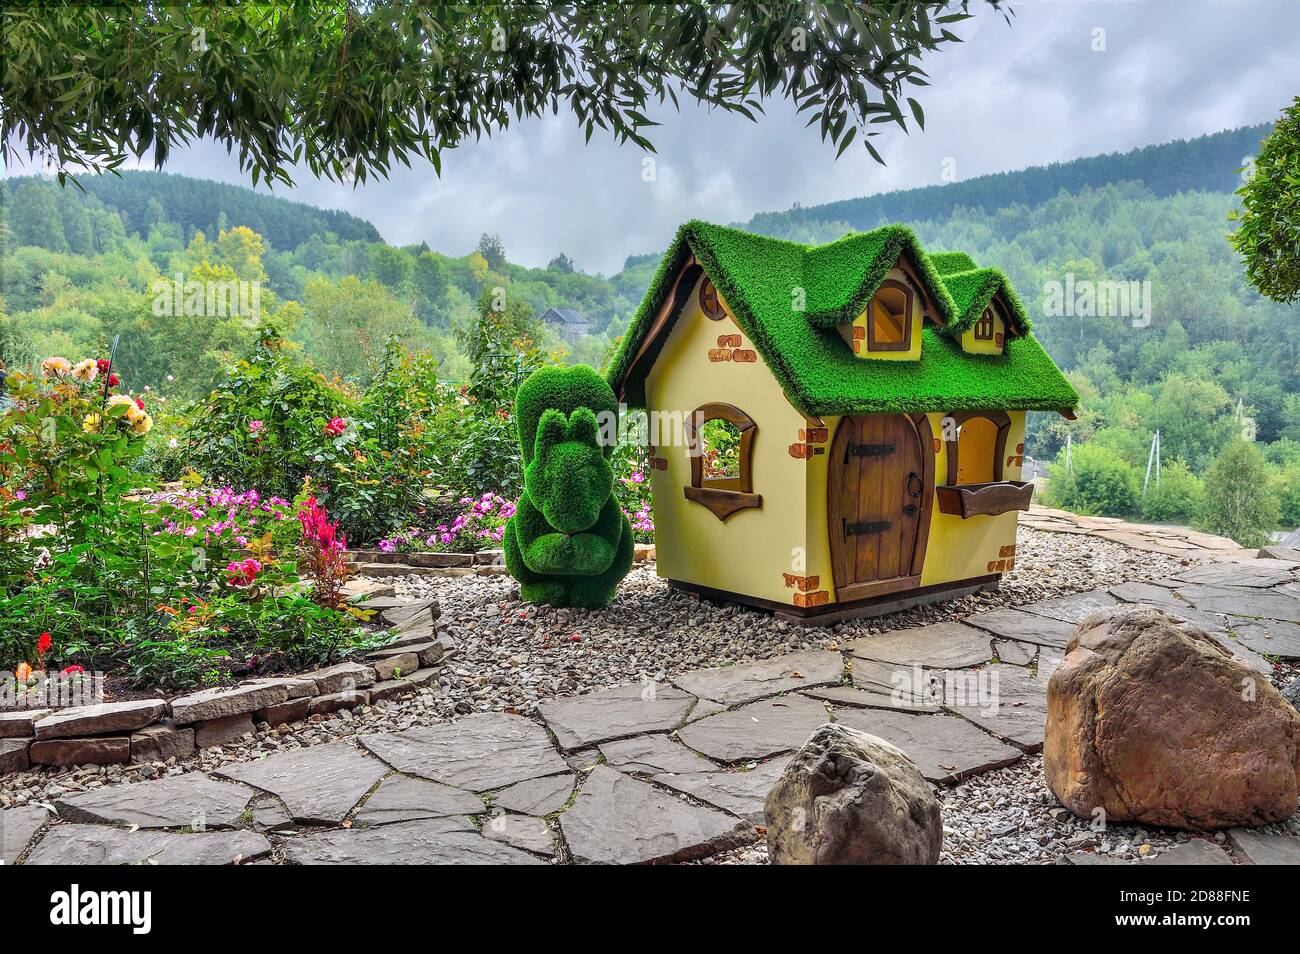 Novokusnezk, Russland - 15. August 2020: Grüne Skulptur des Eichhörnchens neben dem kleinen Haus, aus Kunstrasen - Gärten topiary erstellt. Rosengarten - Stockfoto